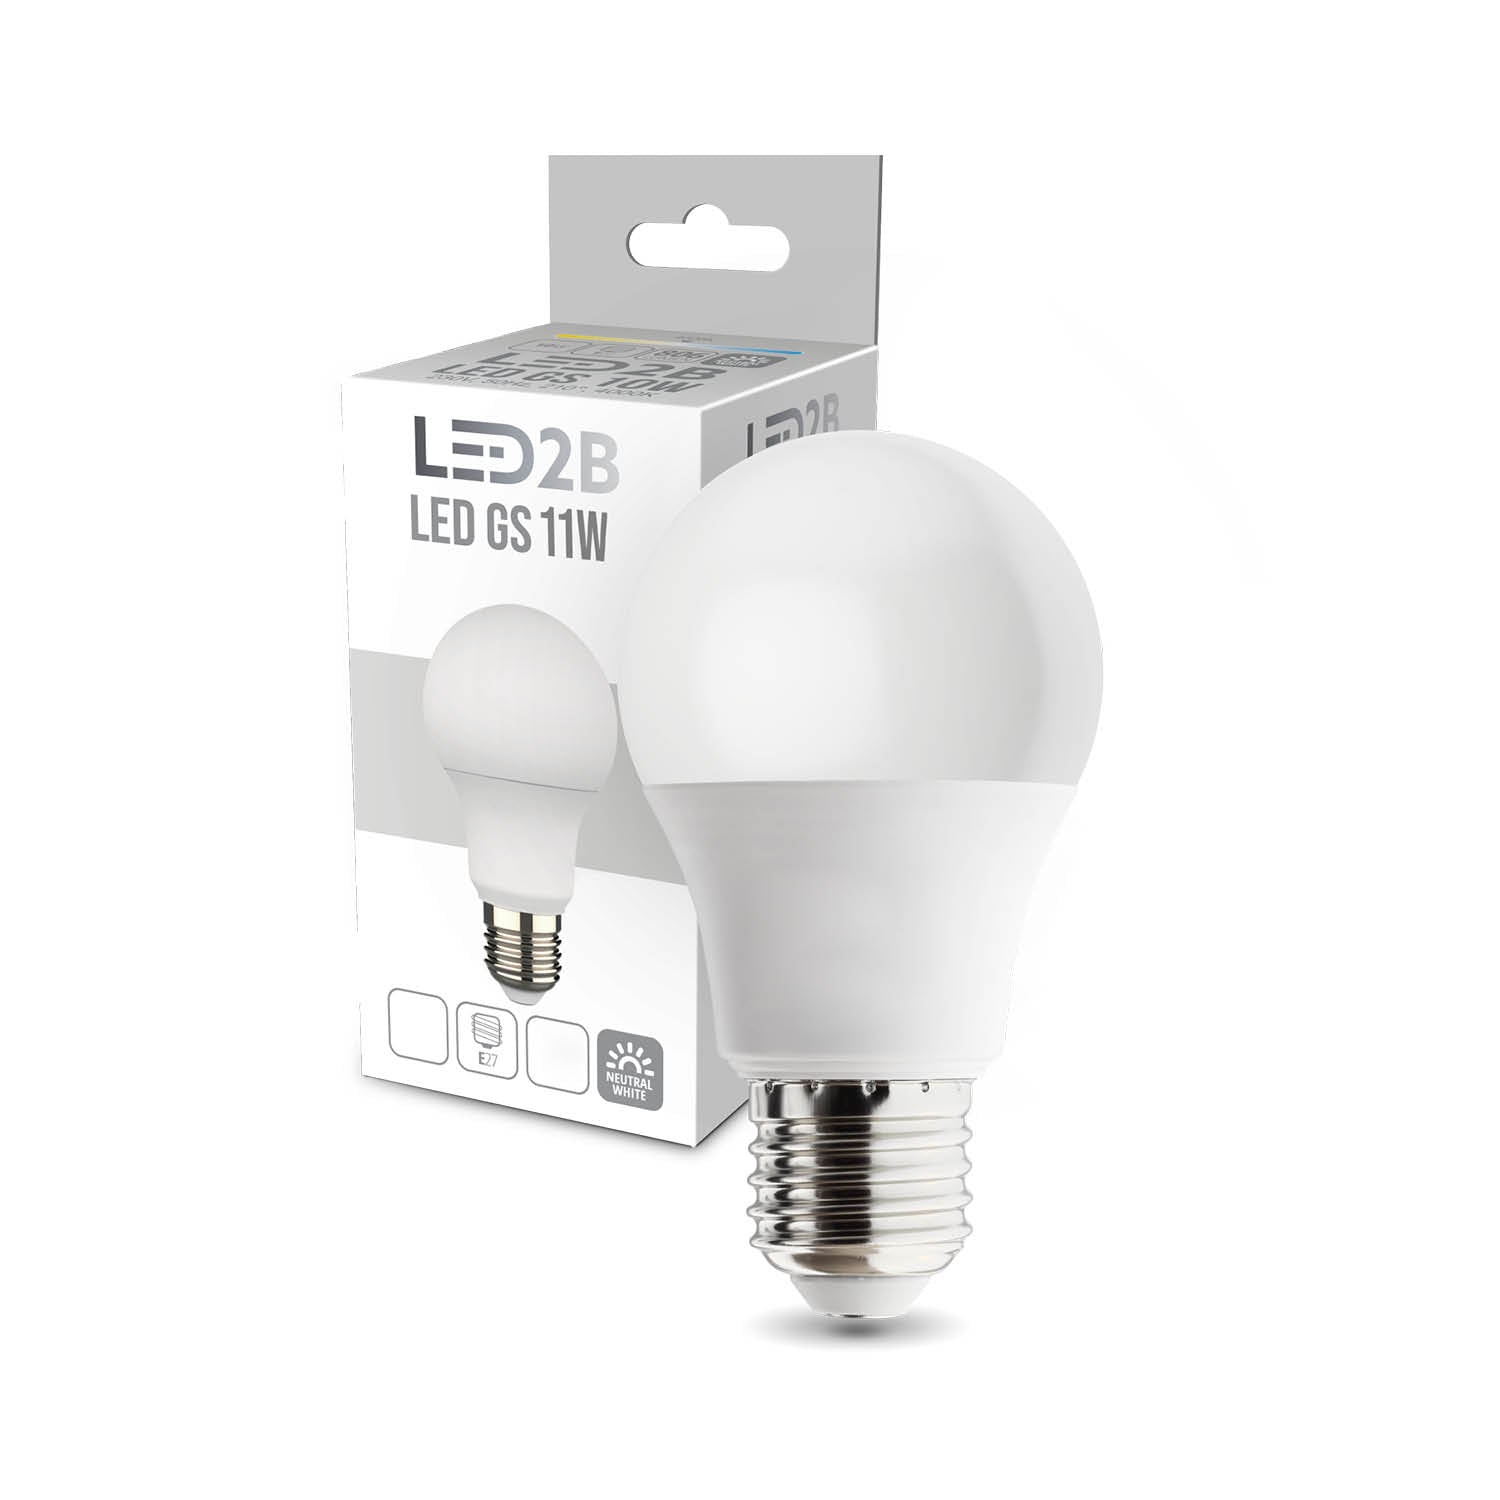 Żarówka LED GS 11W E27 barwa neutralna biała